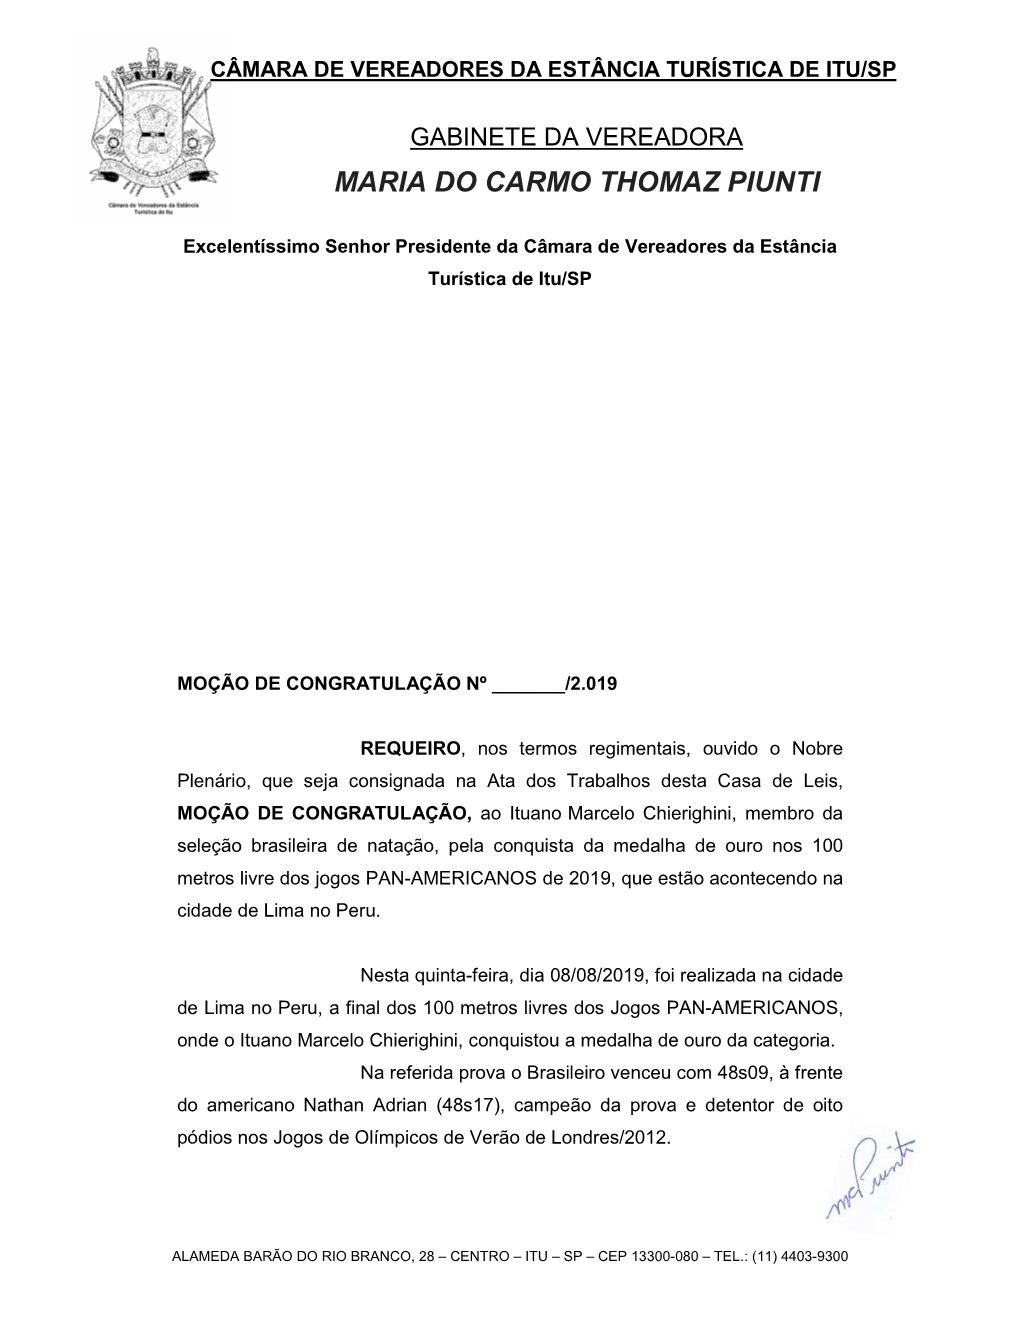 Maria Do Carmo Thomaz Piunti